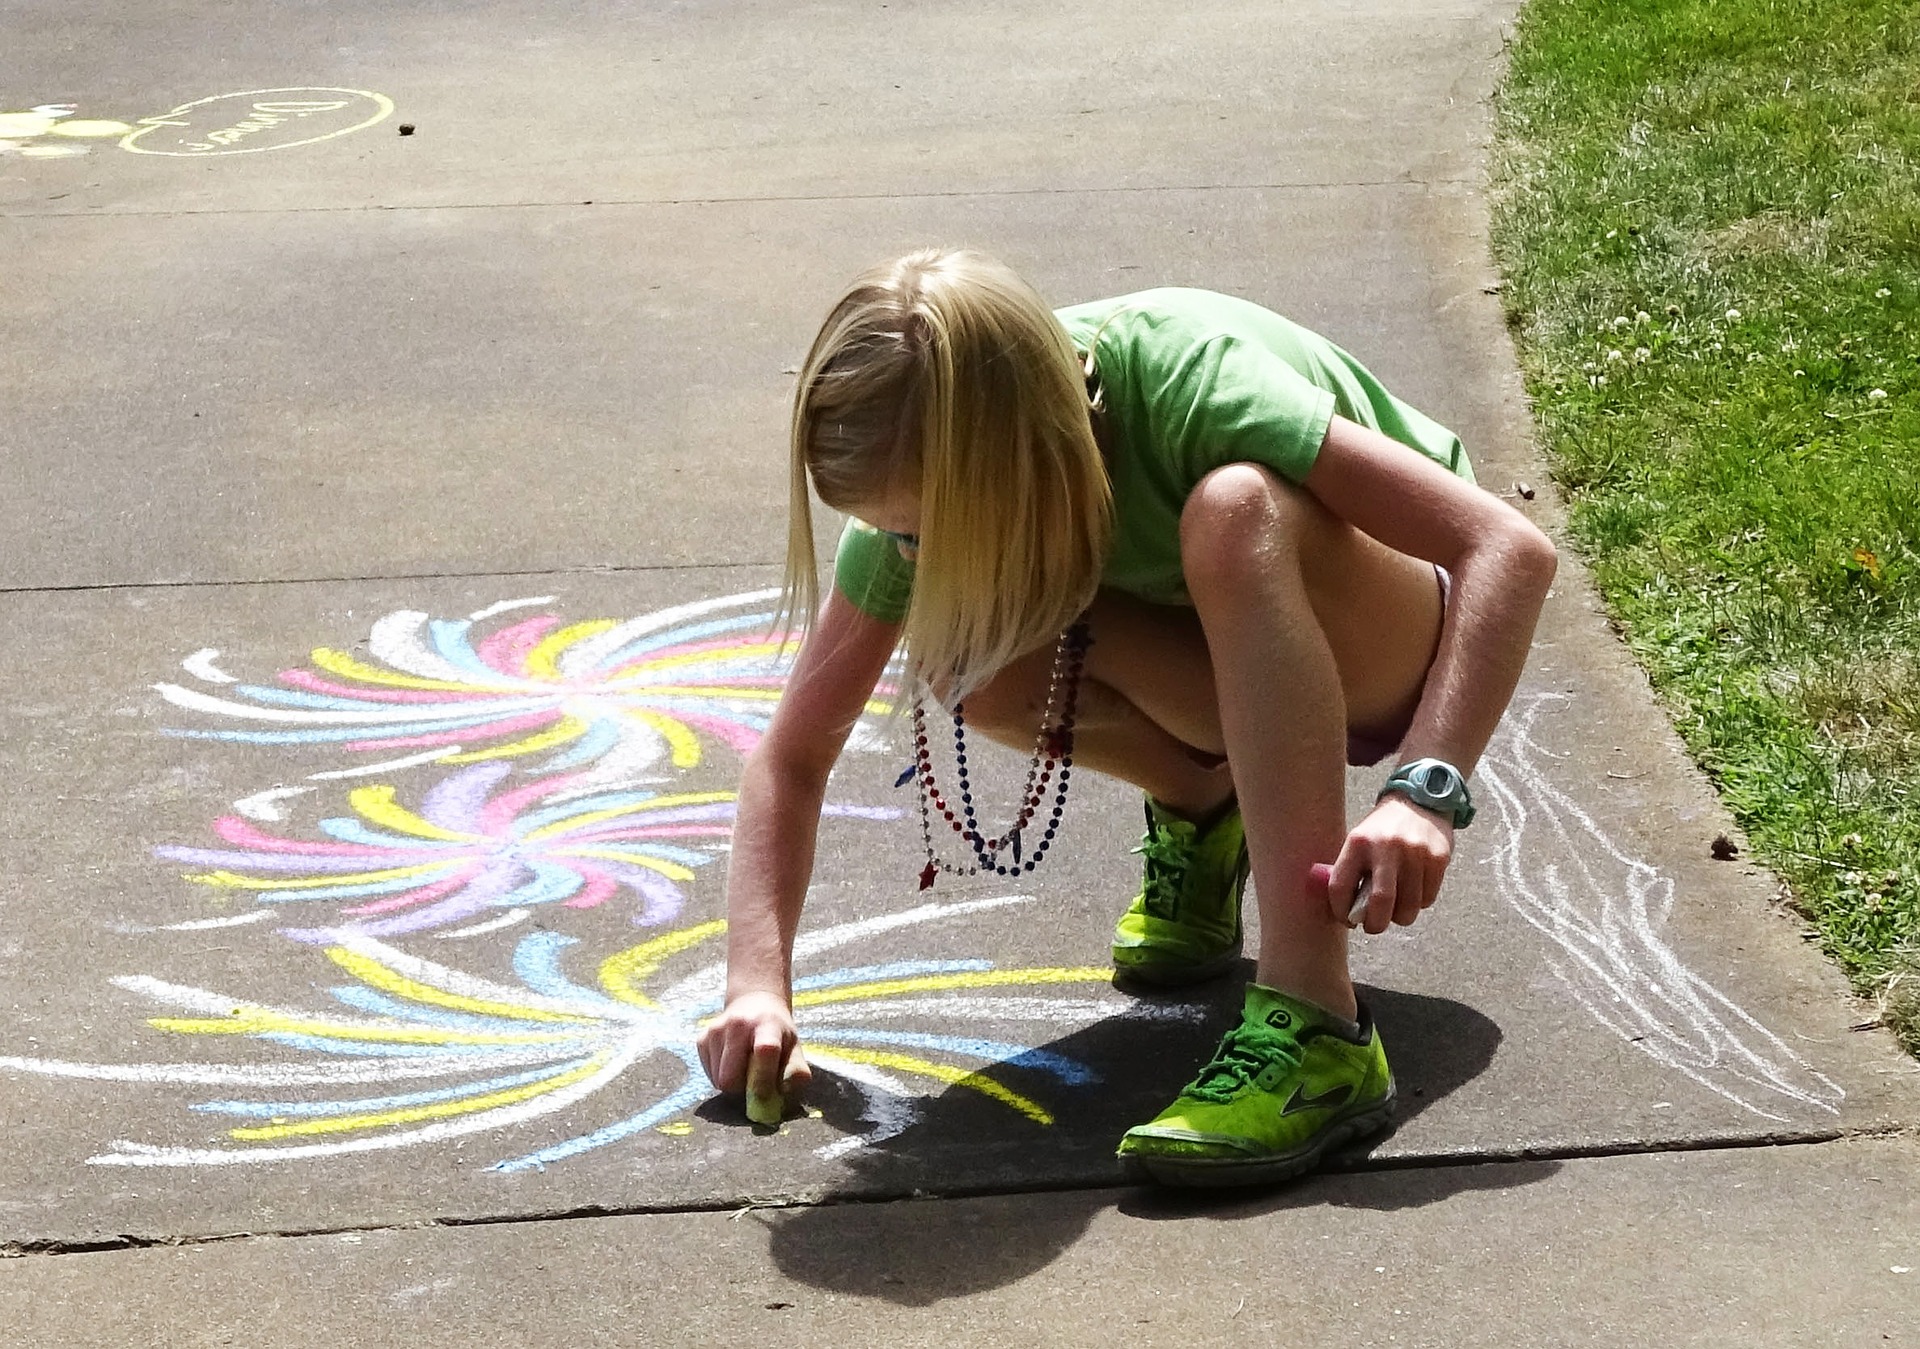 Drawing on sidewalk with chalk